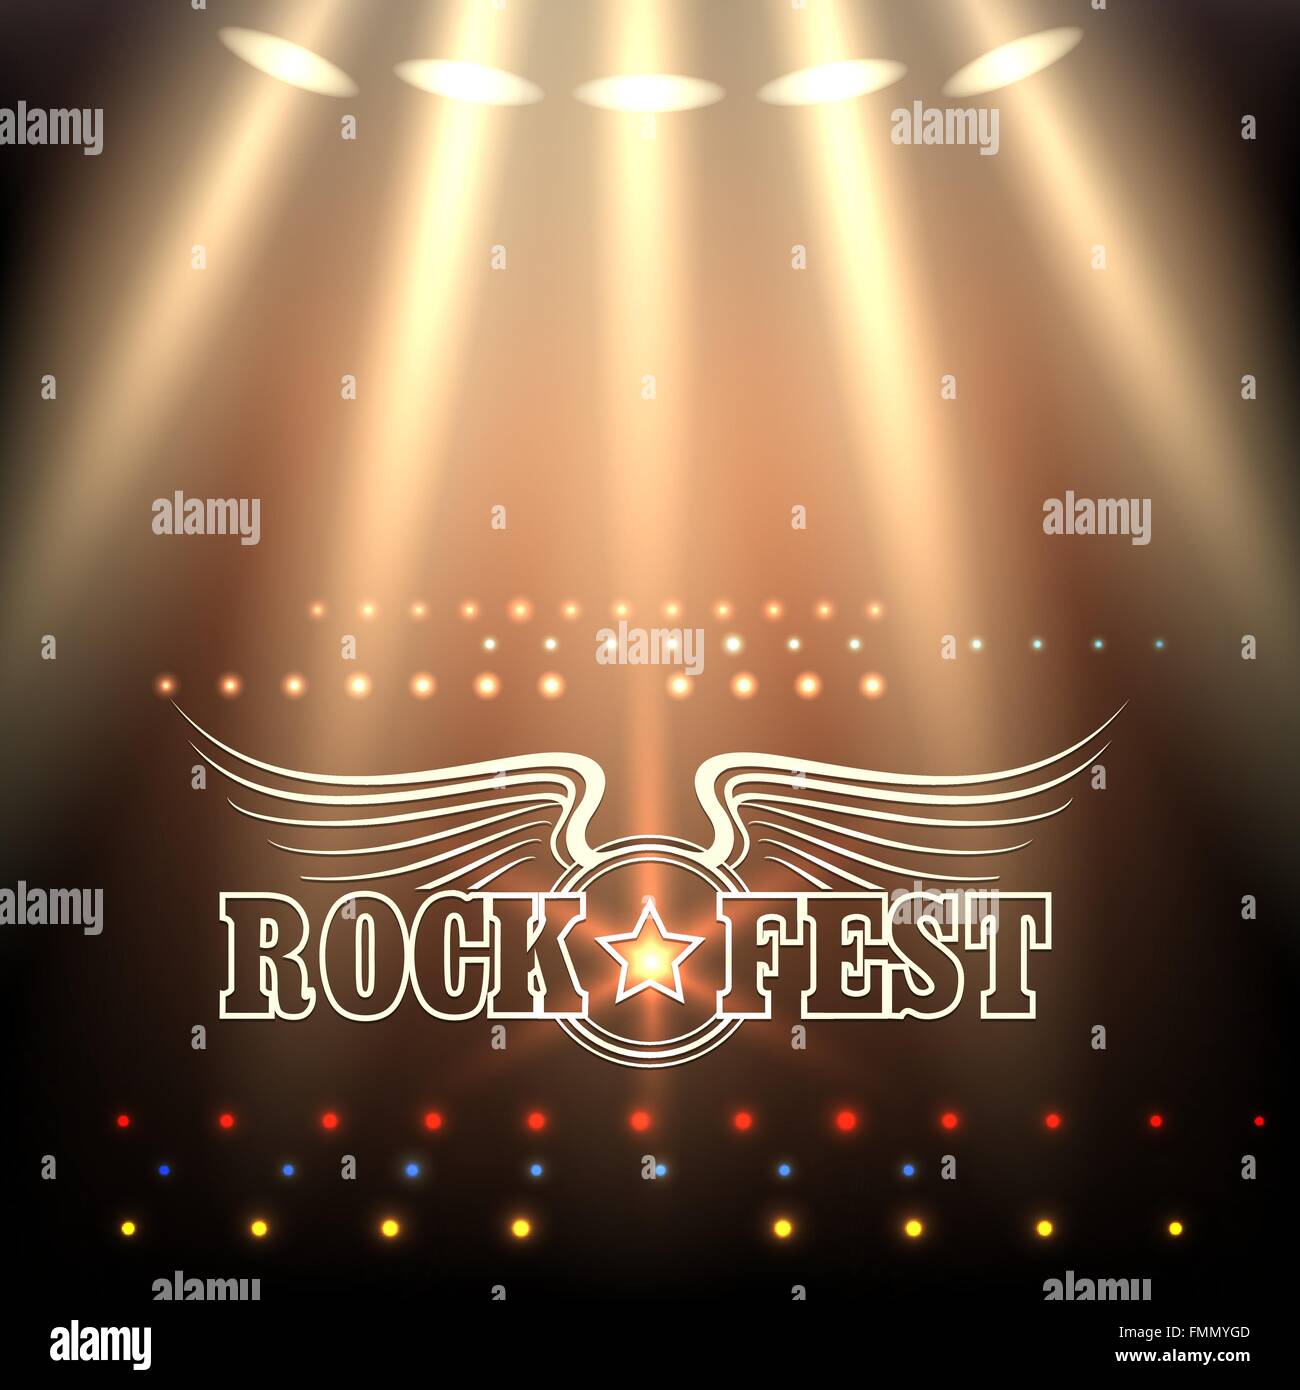 Rock Festival Cartel Plantilla. Etapa de focos y redacción Rock Fest decorado por ALAS y estrellas. Fuente libre utilizado. Ilustración del Vector